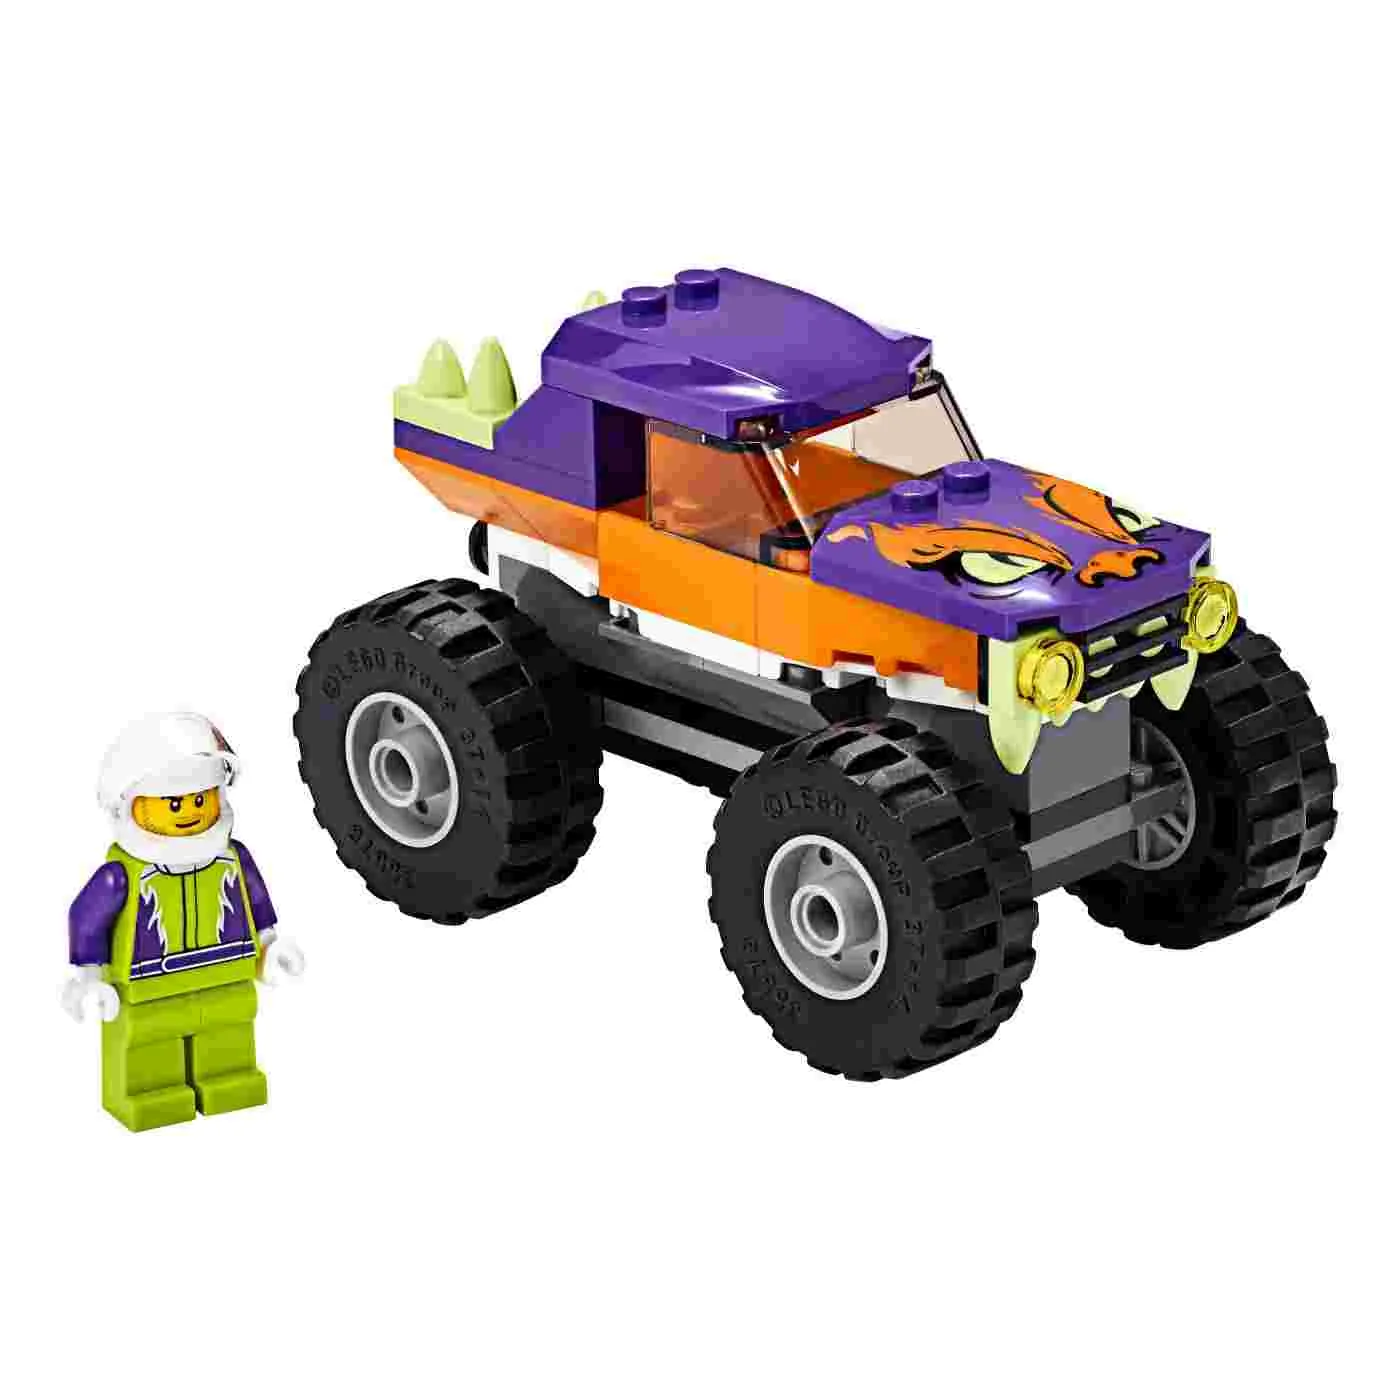 LEGO City Camión Monster